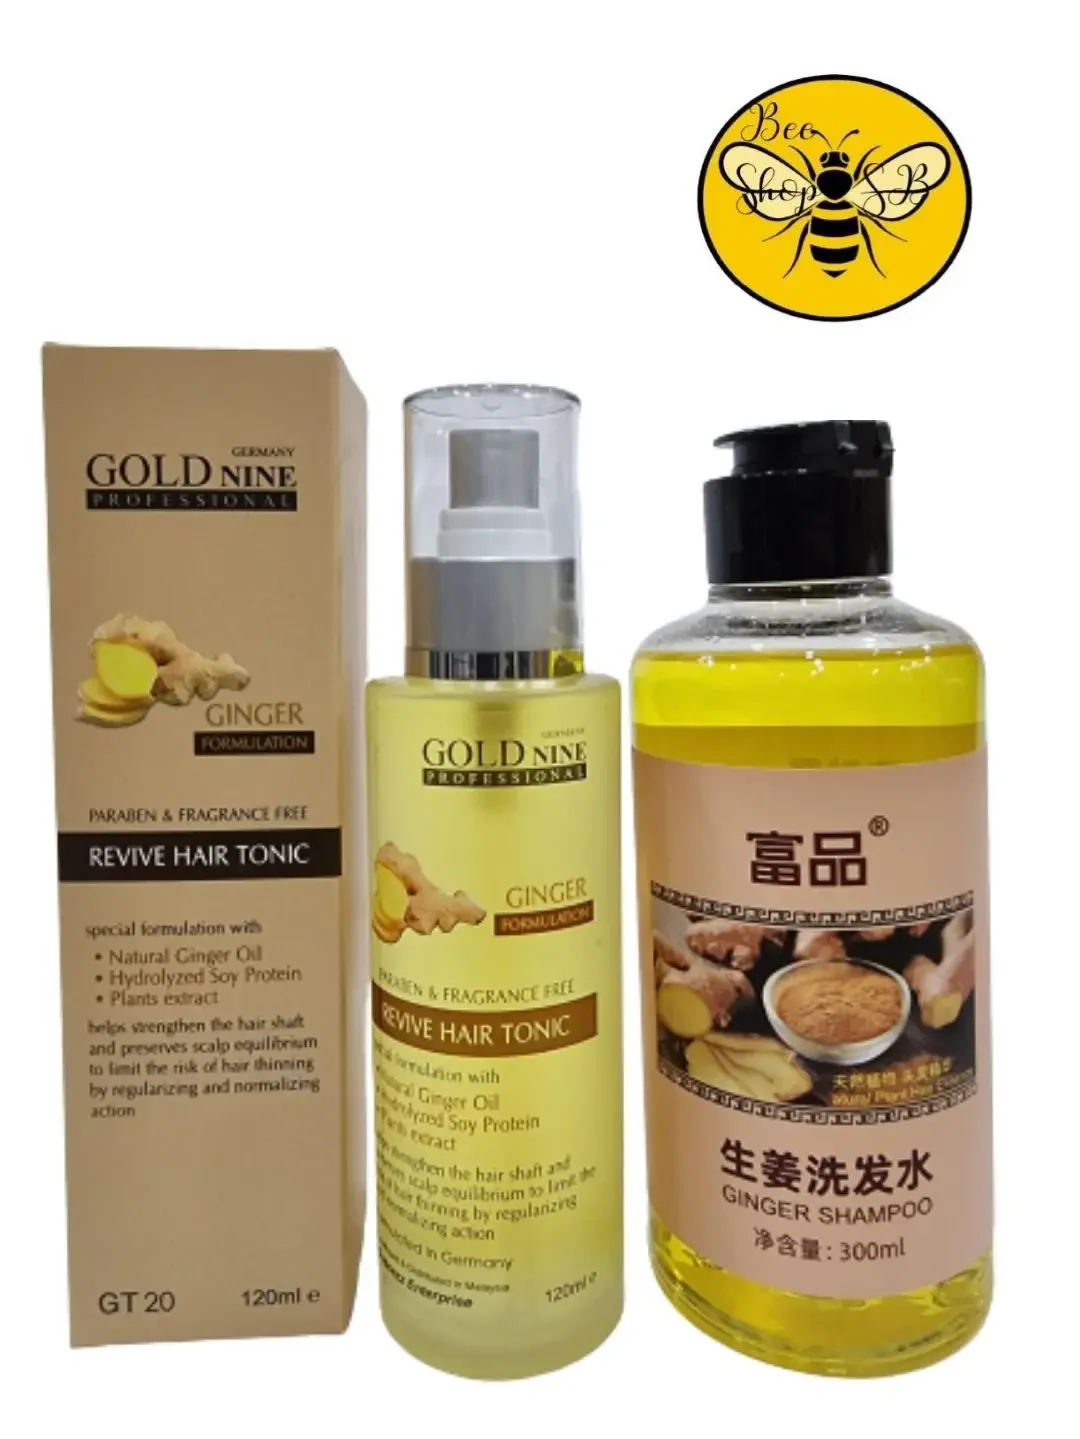 Gold Nine Ginger Hair Tonic 120ml + Ginger TW Anti Hair Loss Shampoo 300ml